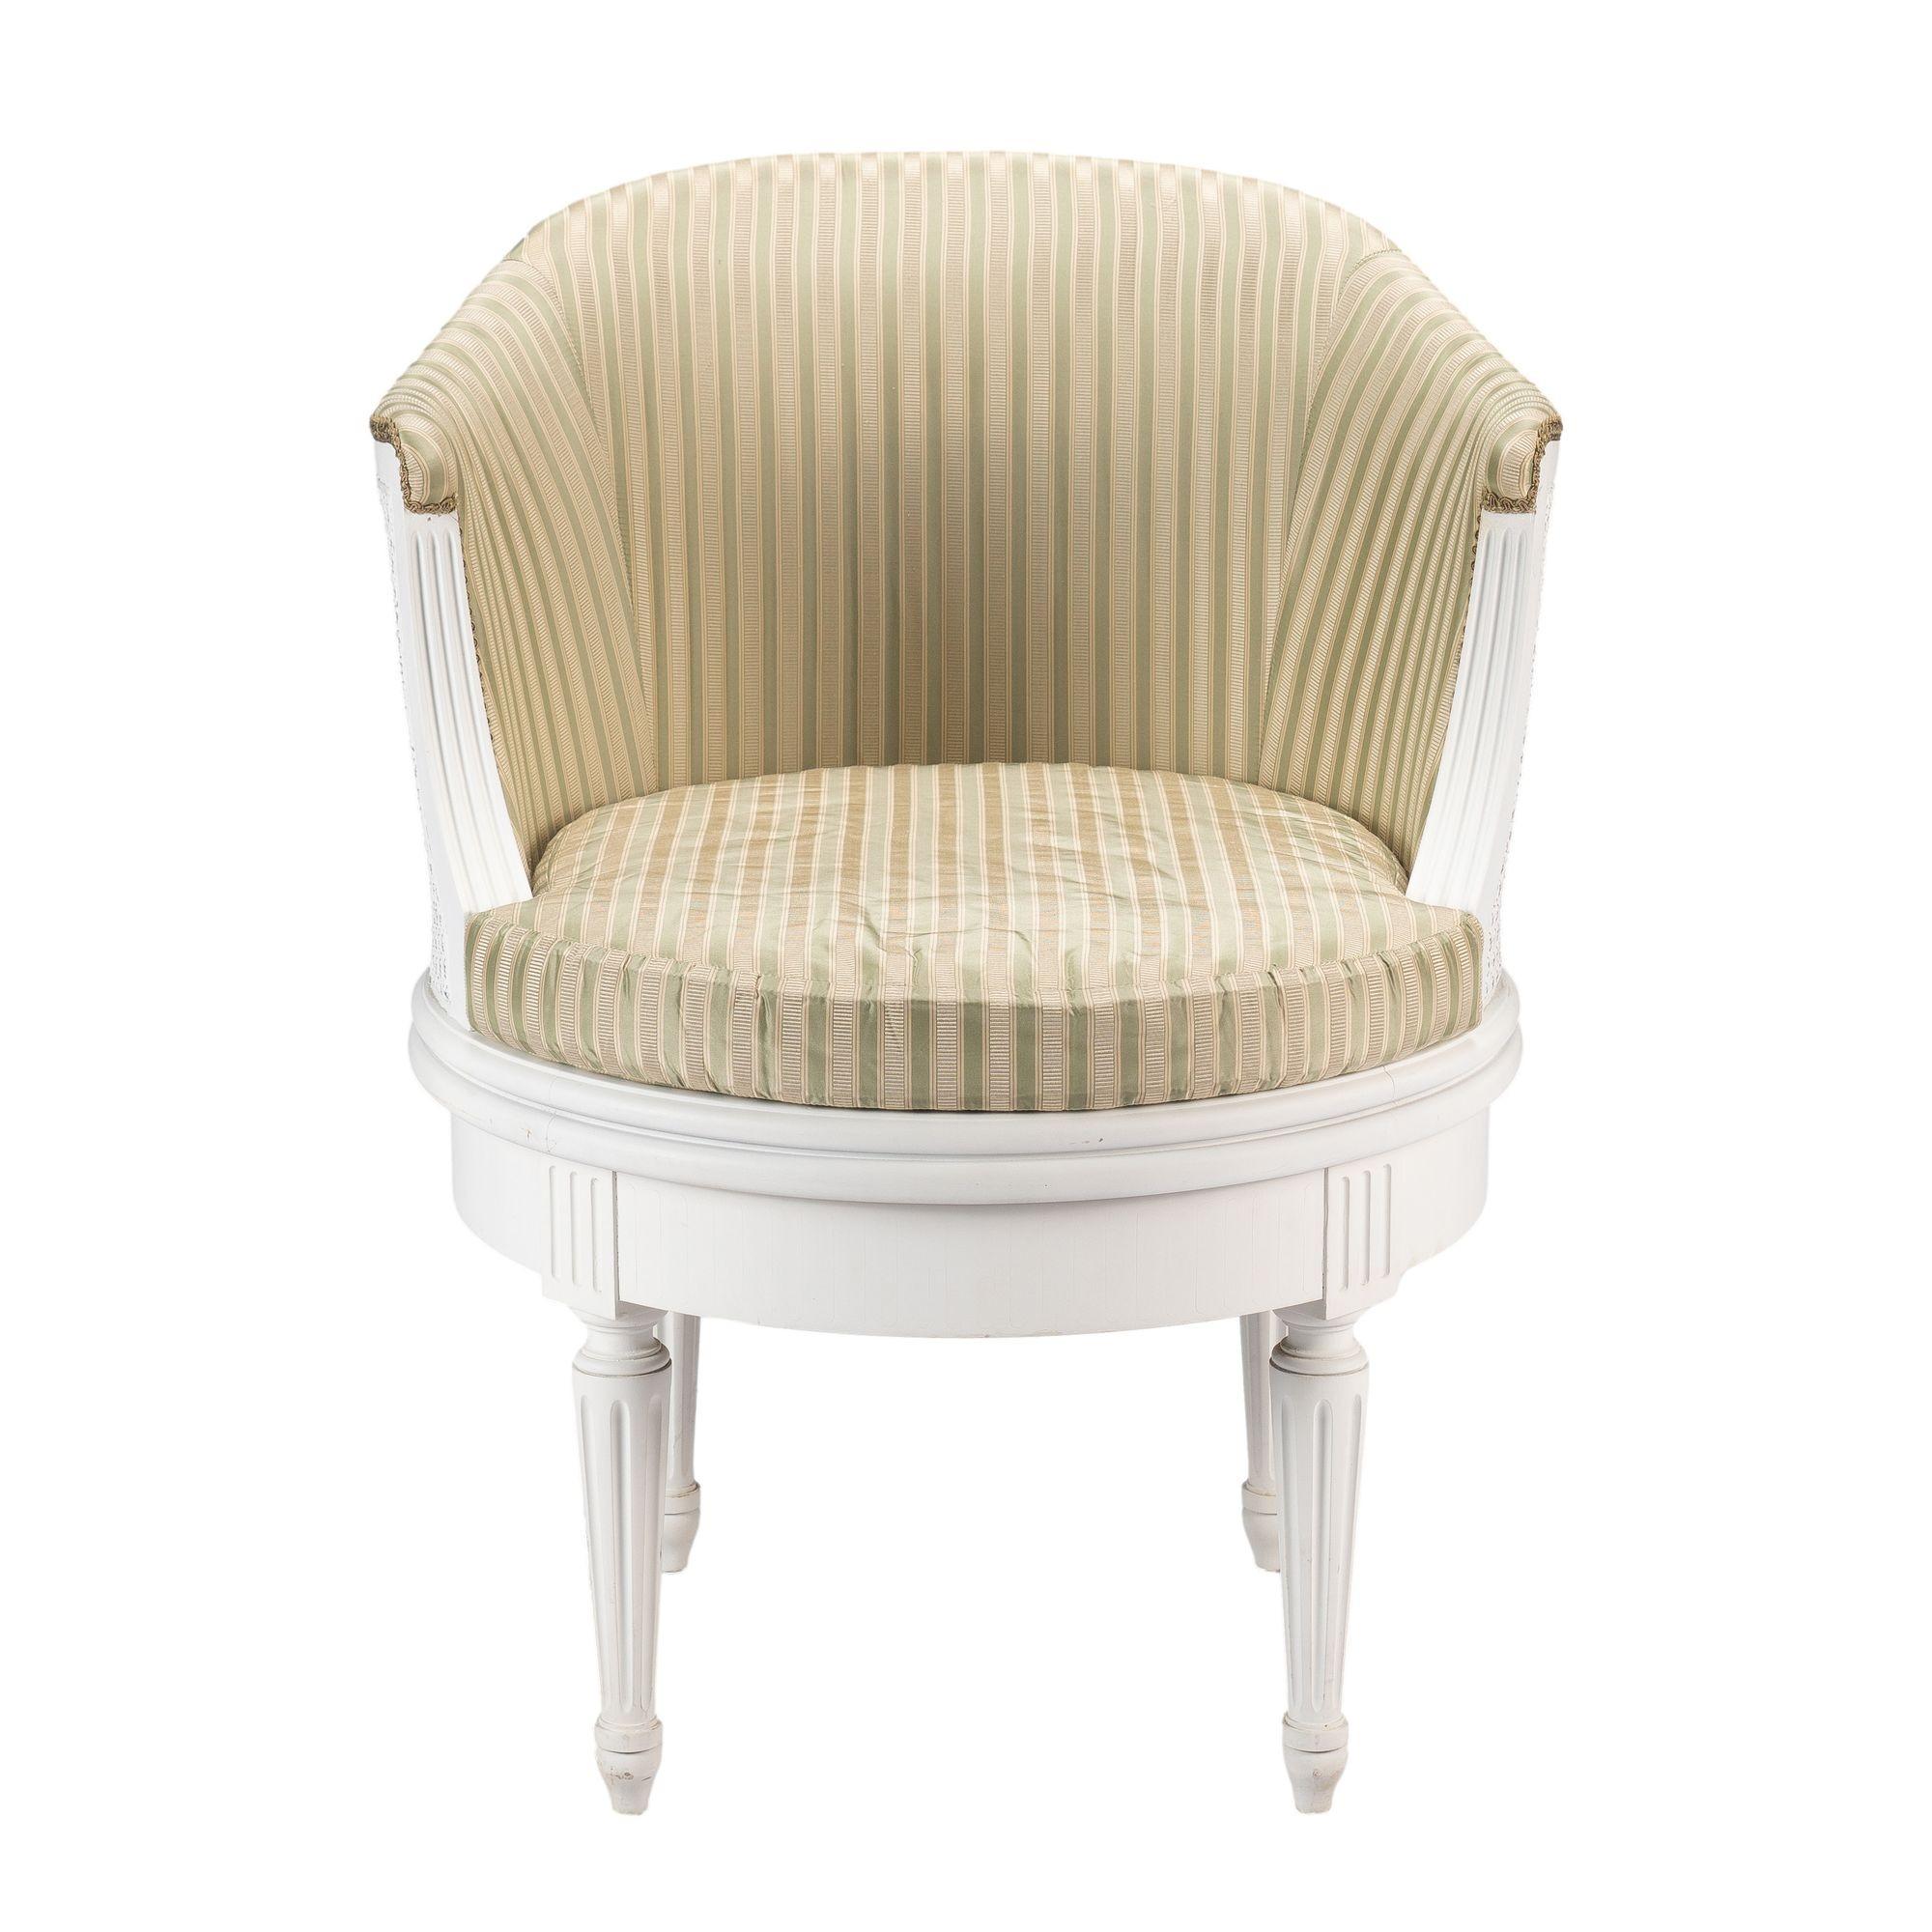 Fauteuil pivotant peint dans le goût Louis XVI. La chaise a un dossier intérieur tapissé avec une garniture de gimp et un cadre extérieur canné. Le siège est canné et équipé d'un coussin rembourré. L'assise est soutenue par quatre pieds tournés et